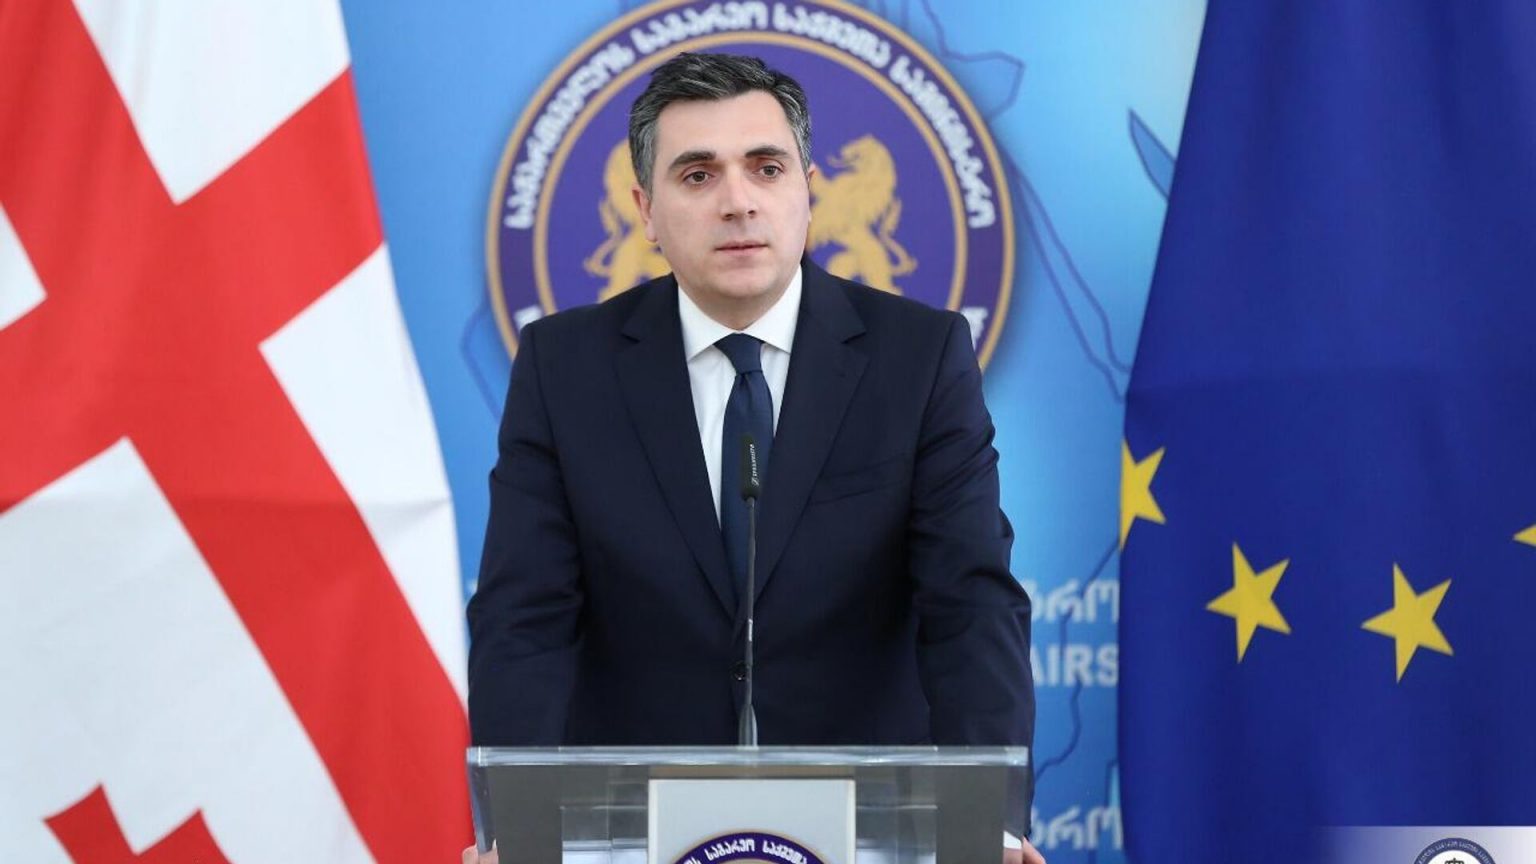 Имеют право: Дарчиашвили о поставках оружия из Франции в Армению через Грузию 